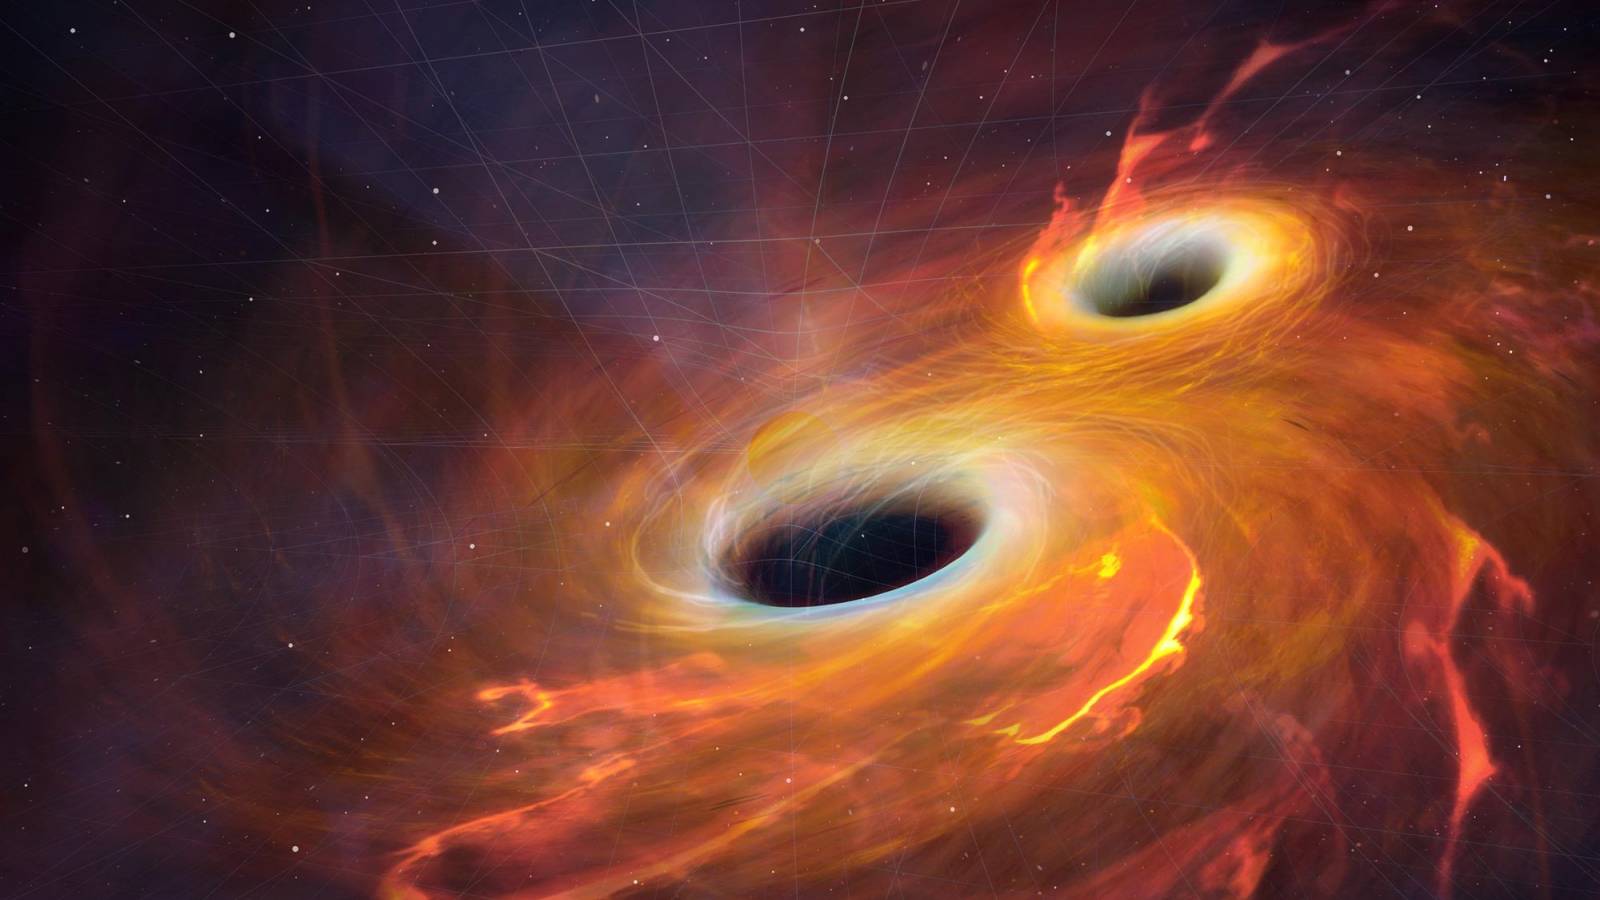 Das fantastische Schwarze Loch